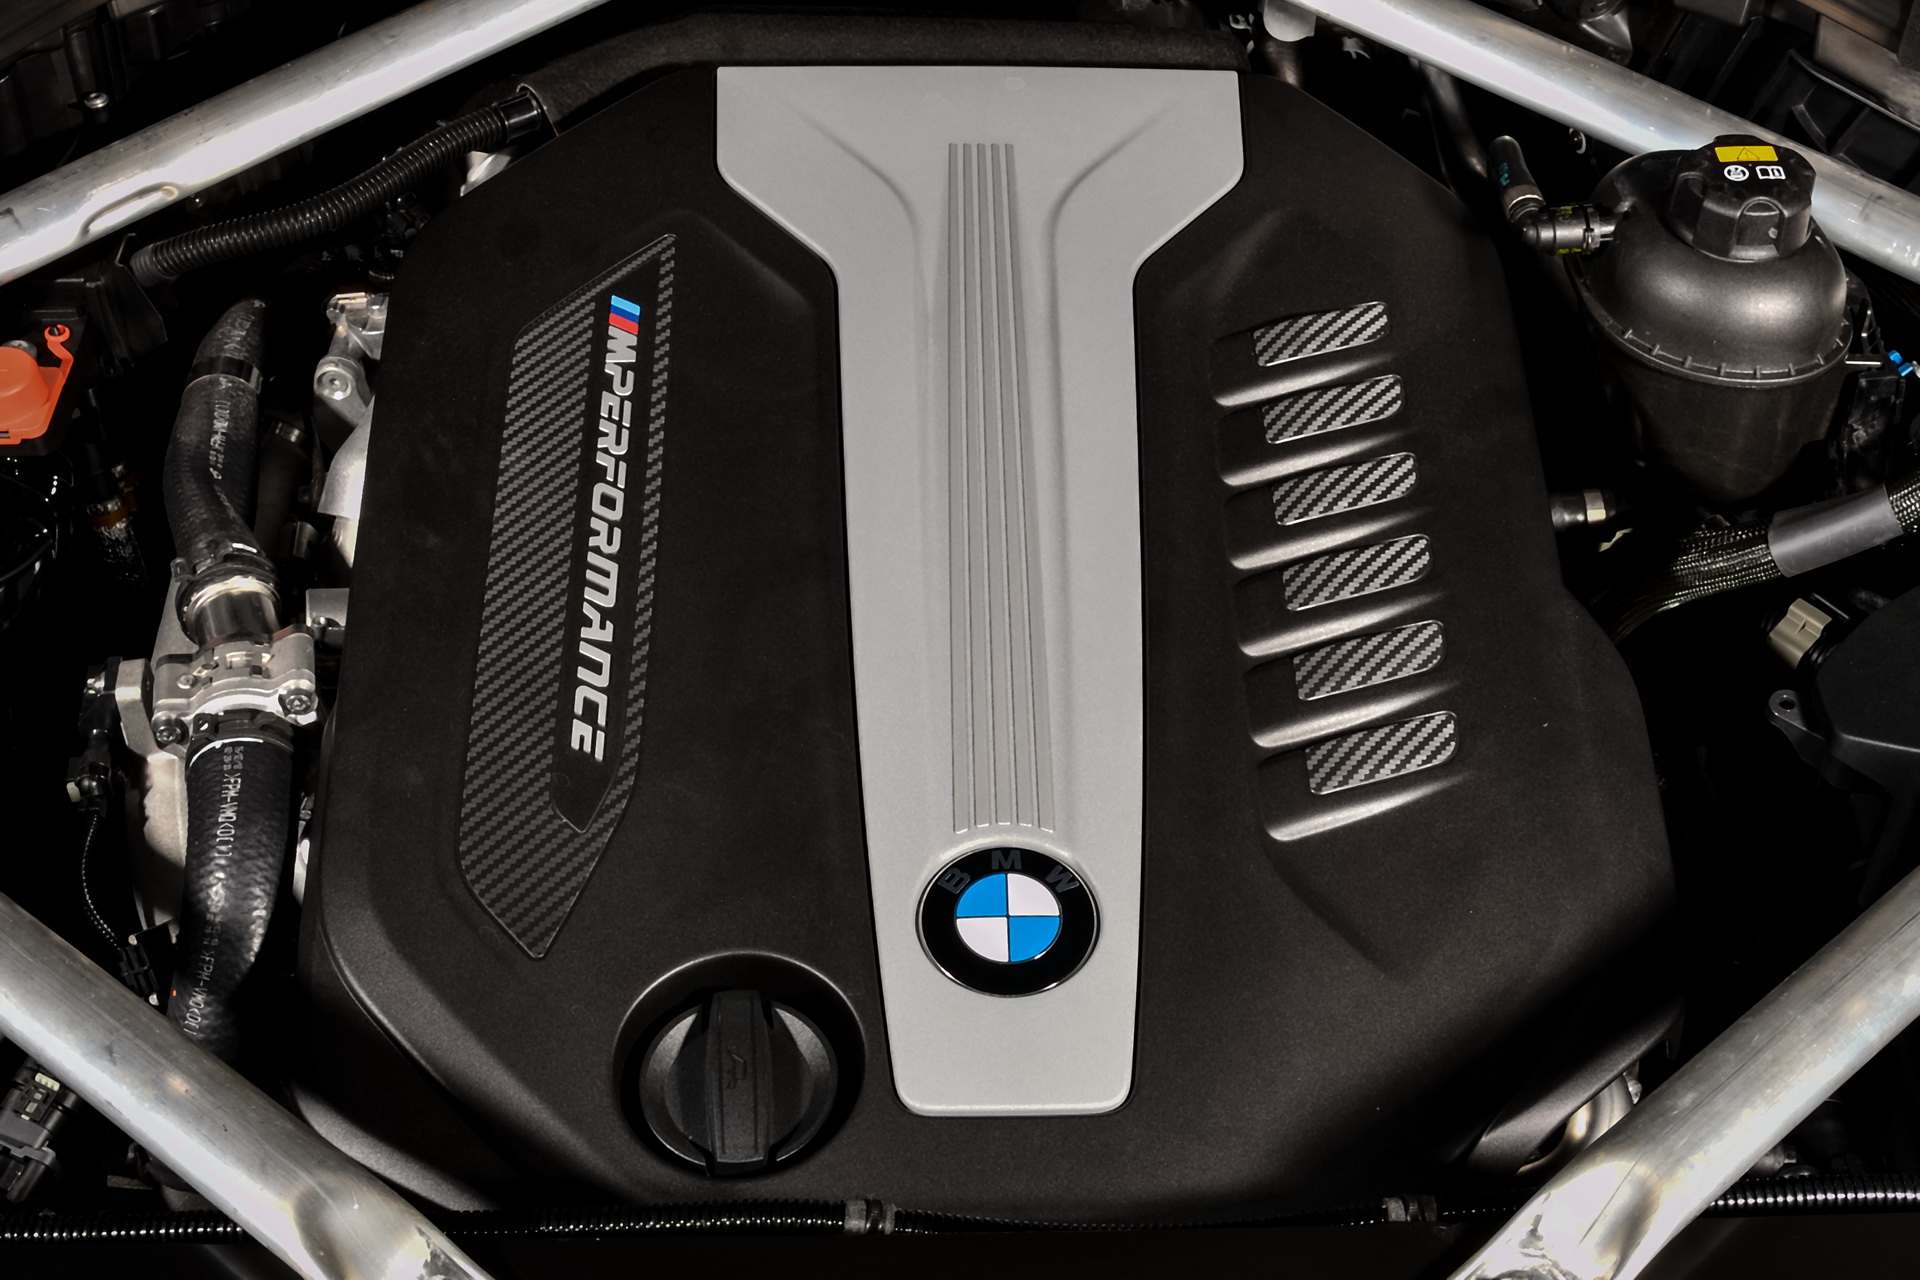 BMW X5 M50d และ X7 M50d Final Editions สองรุ่นสั่งลาเครื่องยนต์ดีเซล ควอท-เทอร์โบ